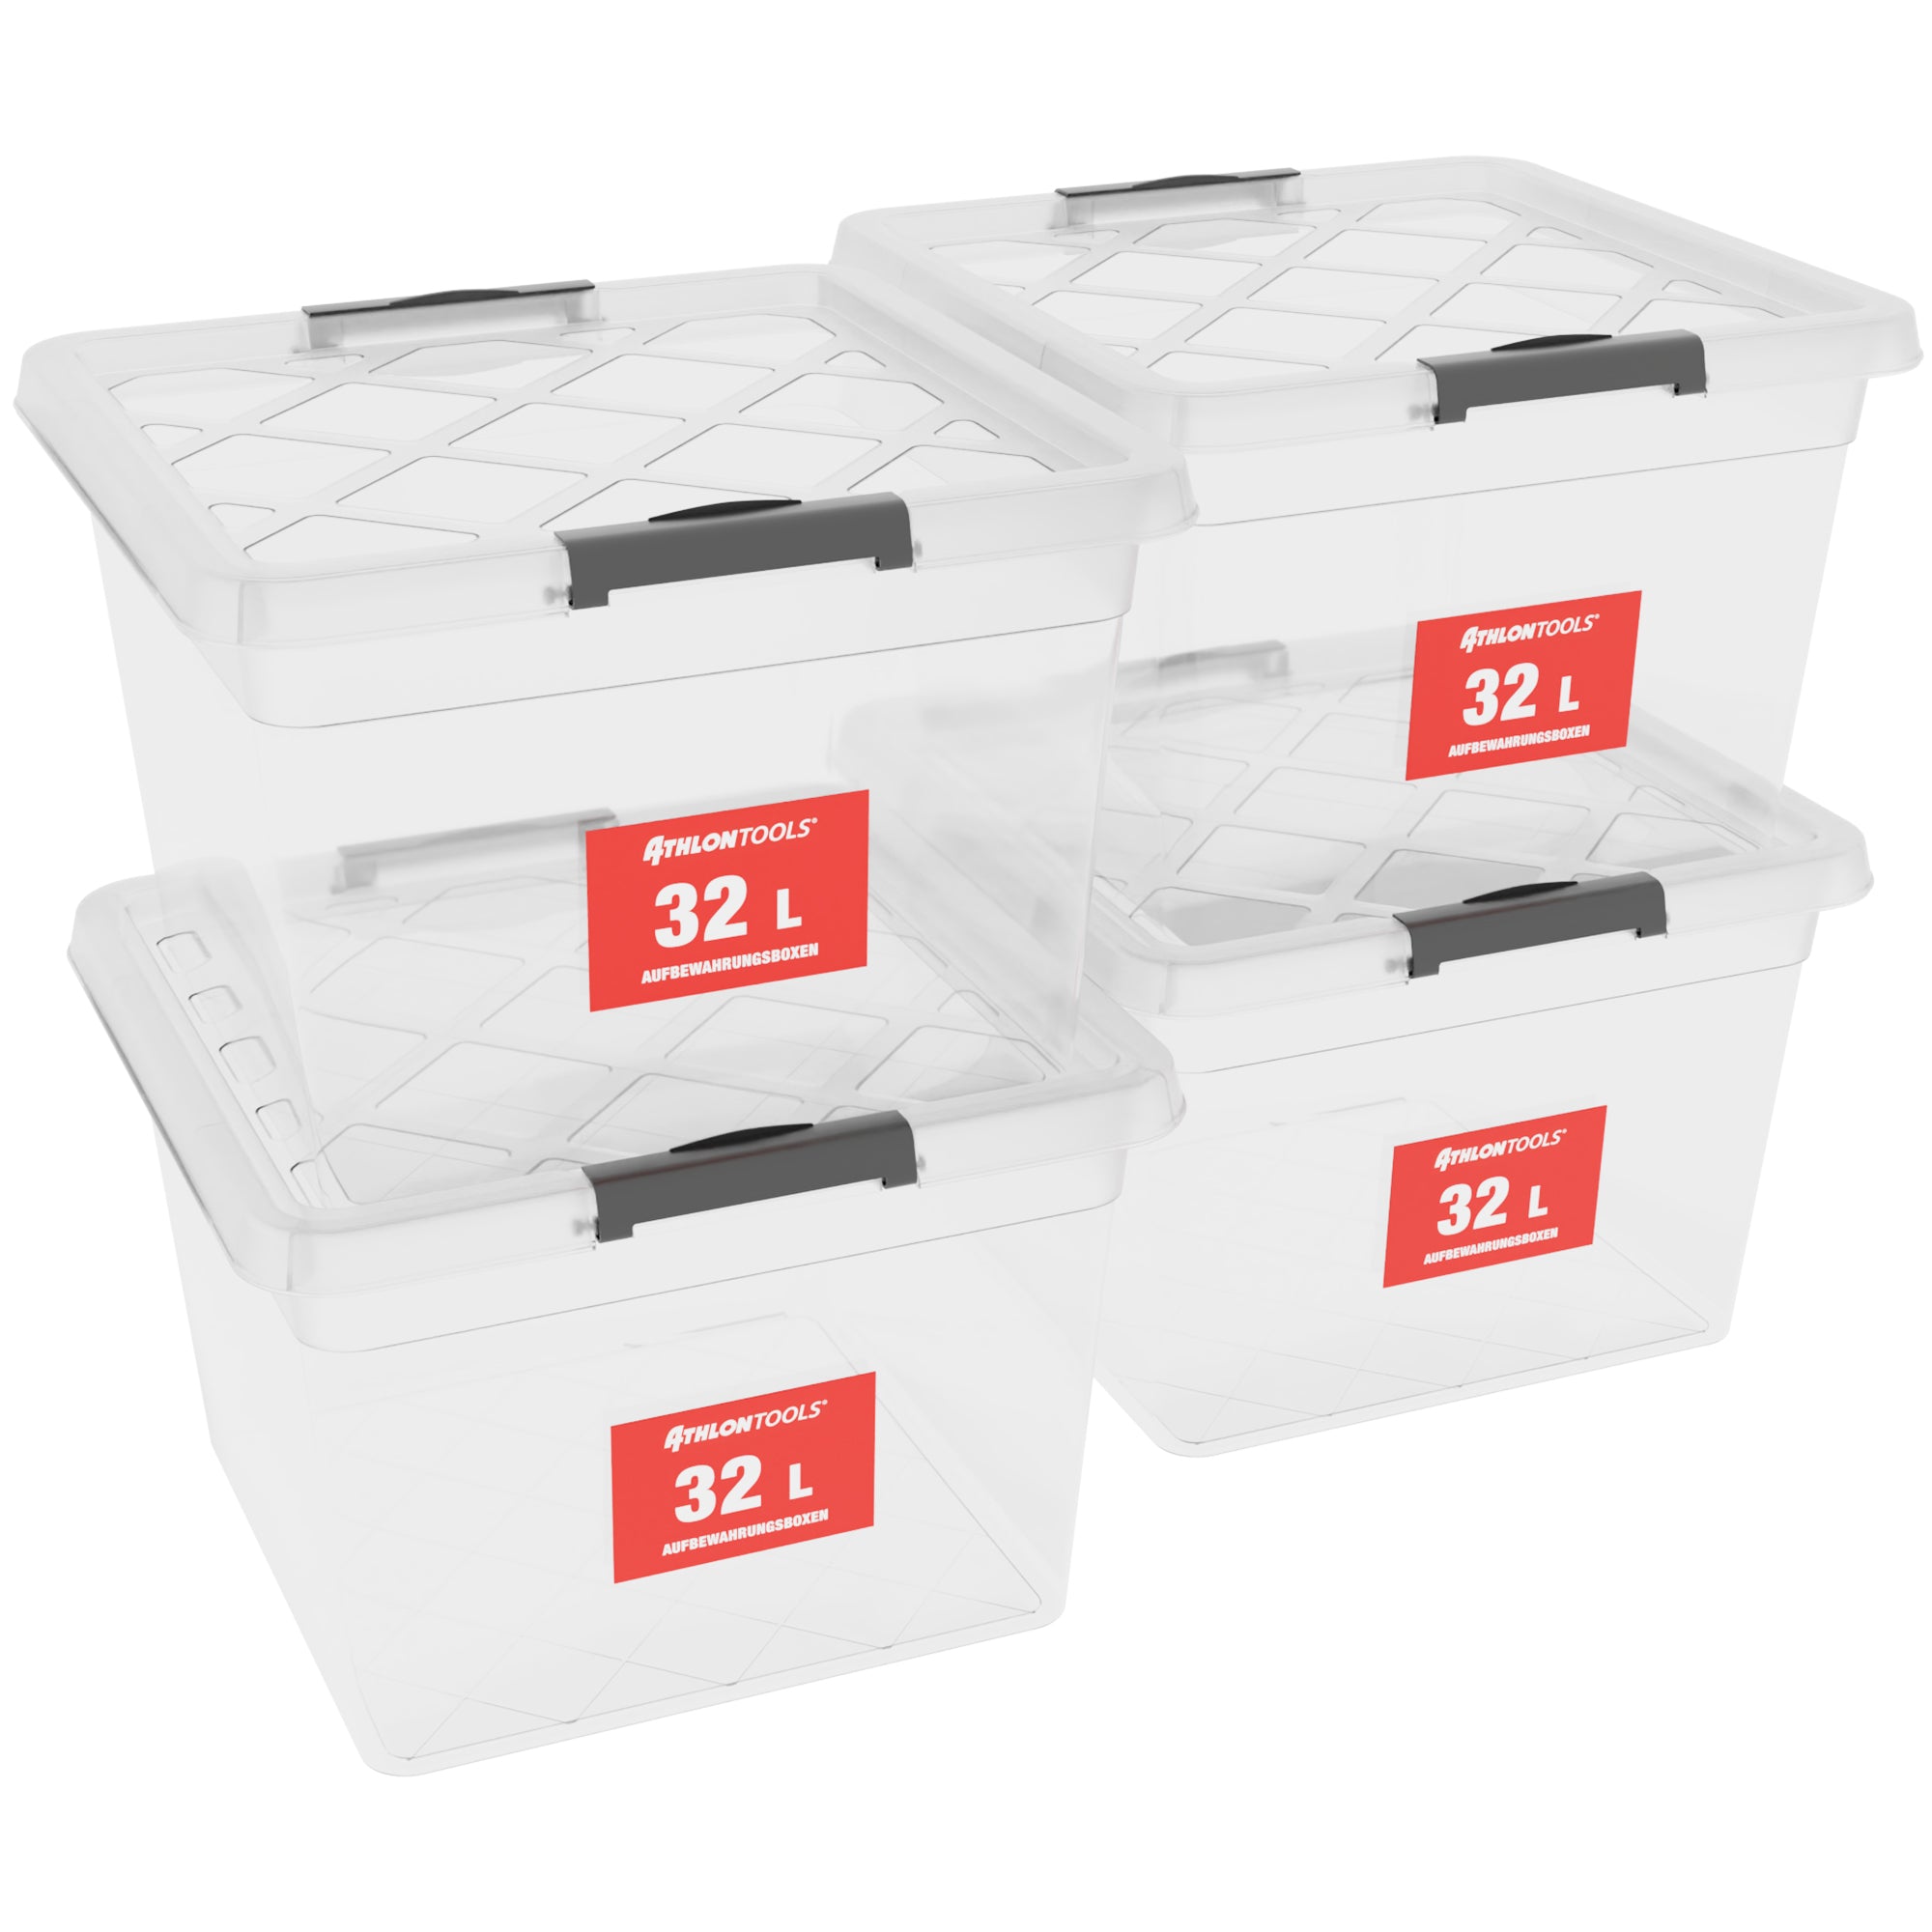 4x 32 L Aufbewahrungsboxen mit Deckel – ATHLON TOOLS